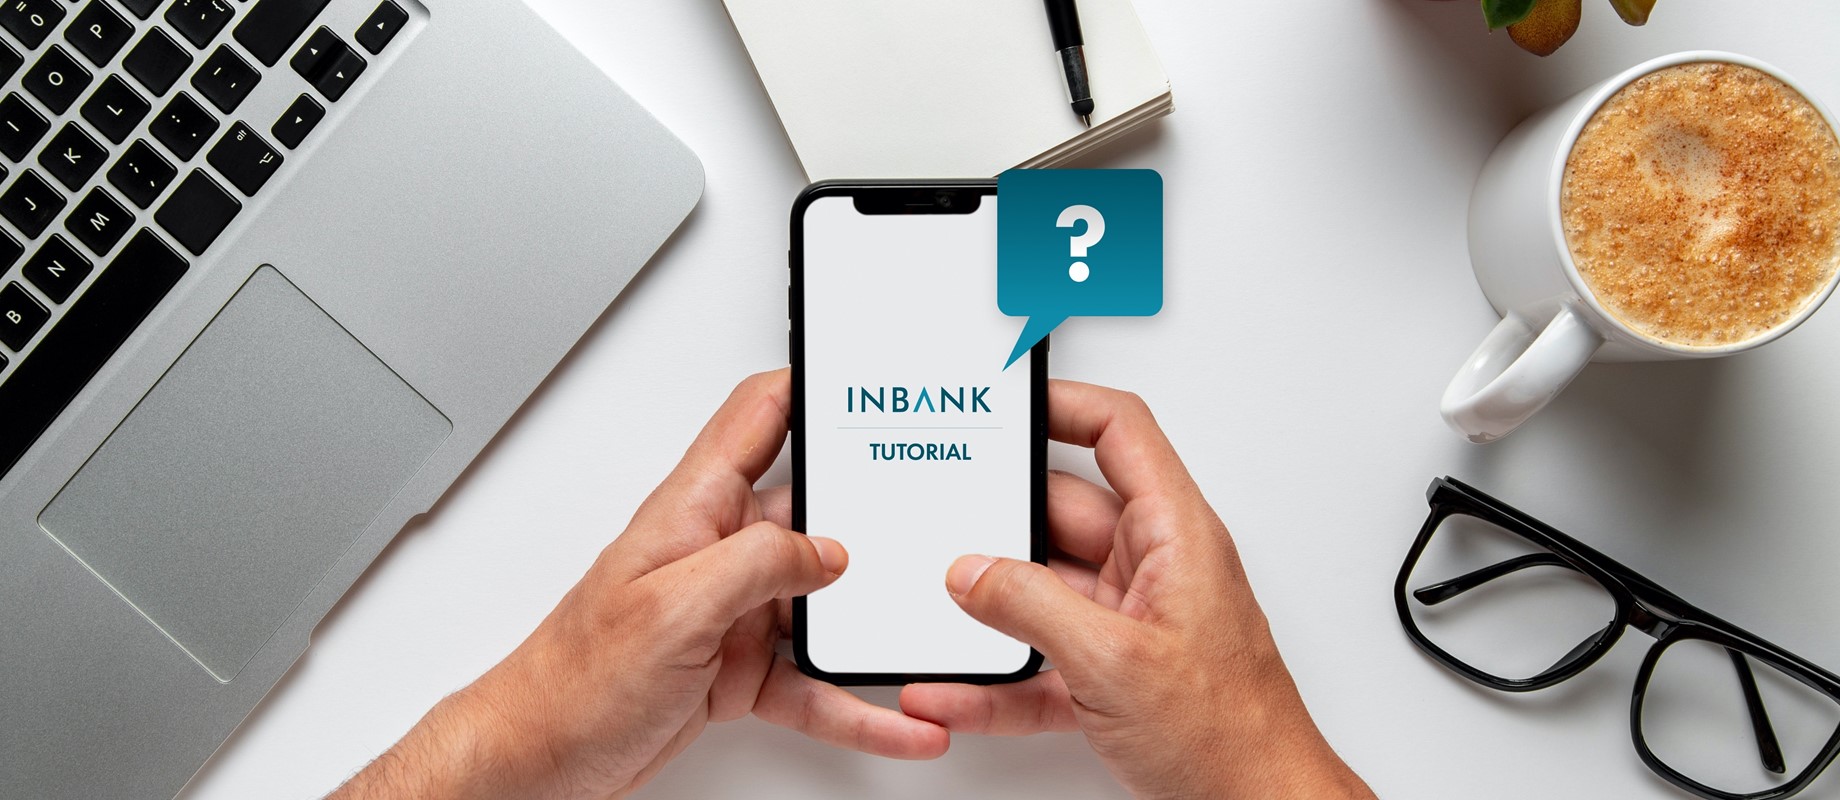 Tutorial Inbank - scopri la semplicità delle operazioni bancarie con Inbank 